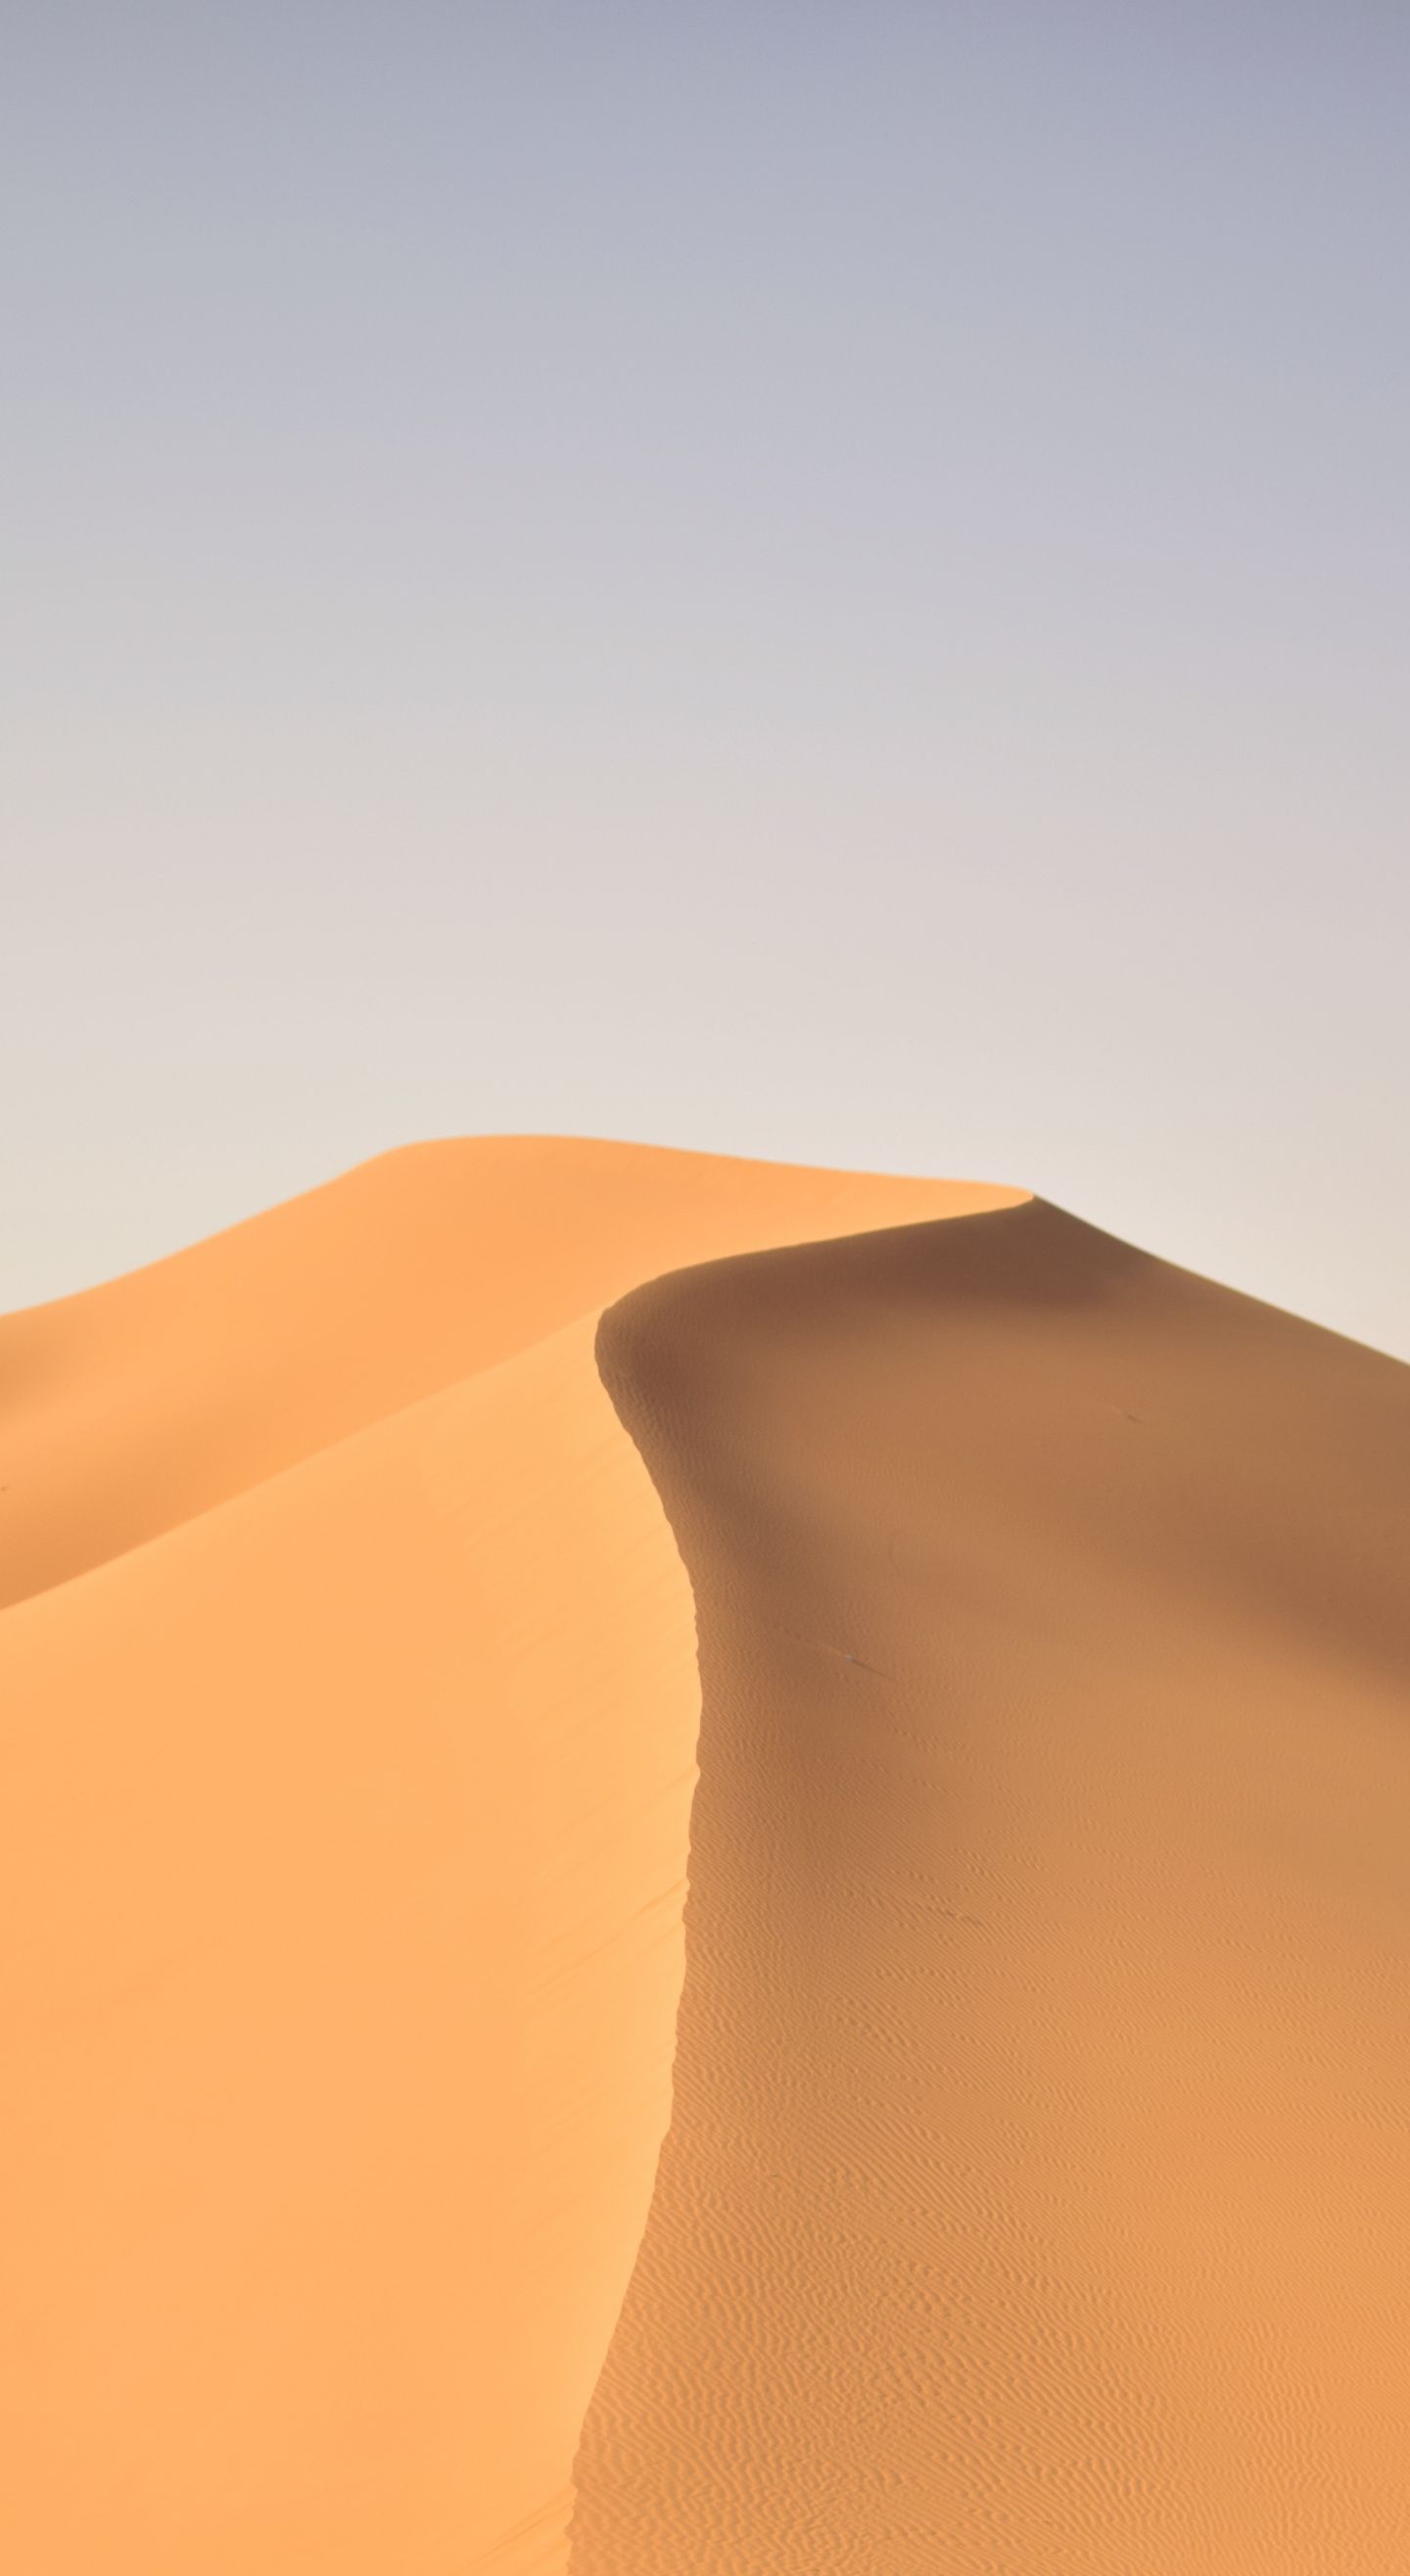 Sand Dunes Wallpapers